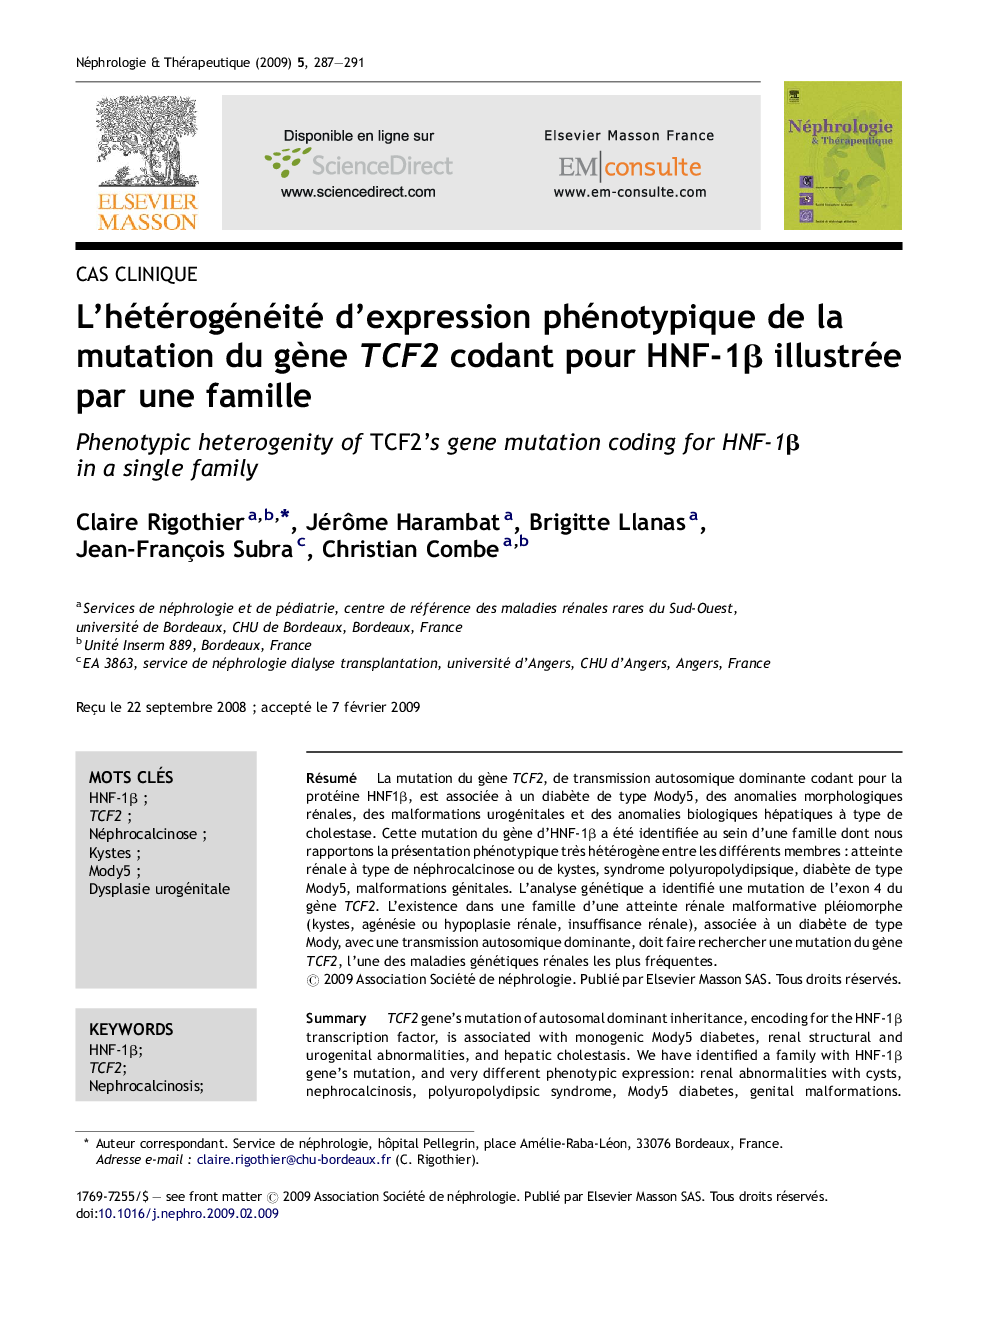 L’hétérogénéité d’expression phénotypique de la mutation du gène TCF2 codant pour HNF-1β illustrée par une famille